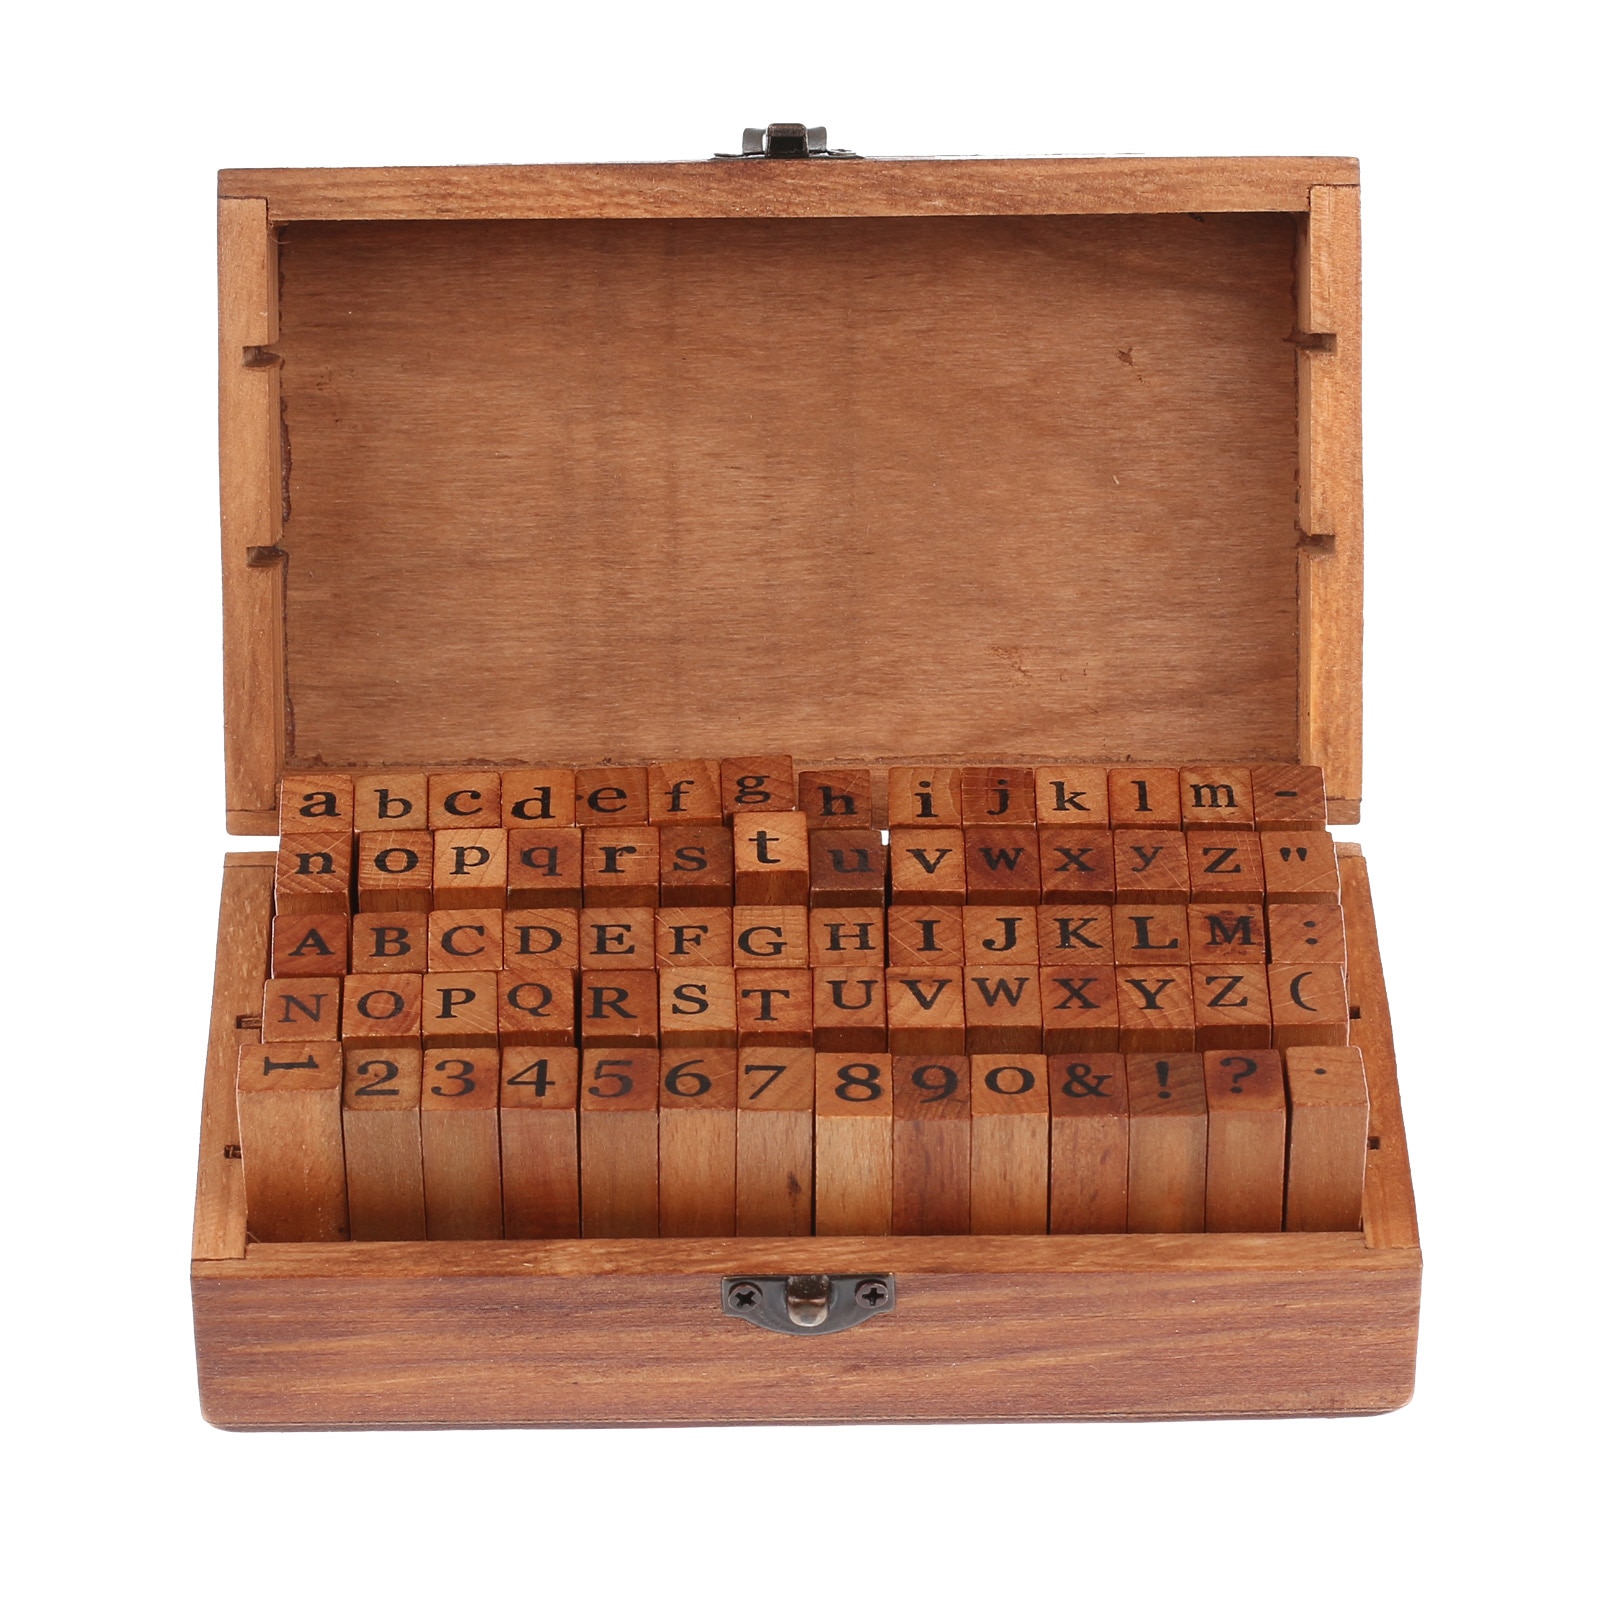 70 stk. brevforsegling diy brev alfabet stempel vintage lære træ alfabet og nummer frimærker sæt med mørkebrun trækasse